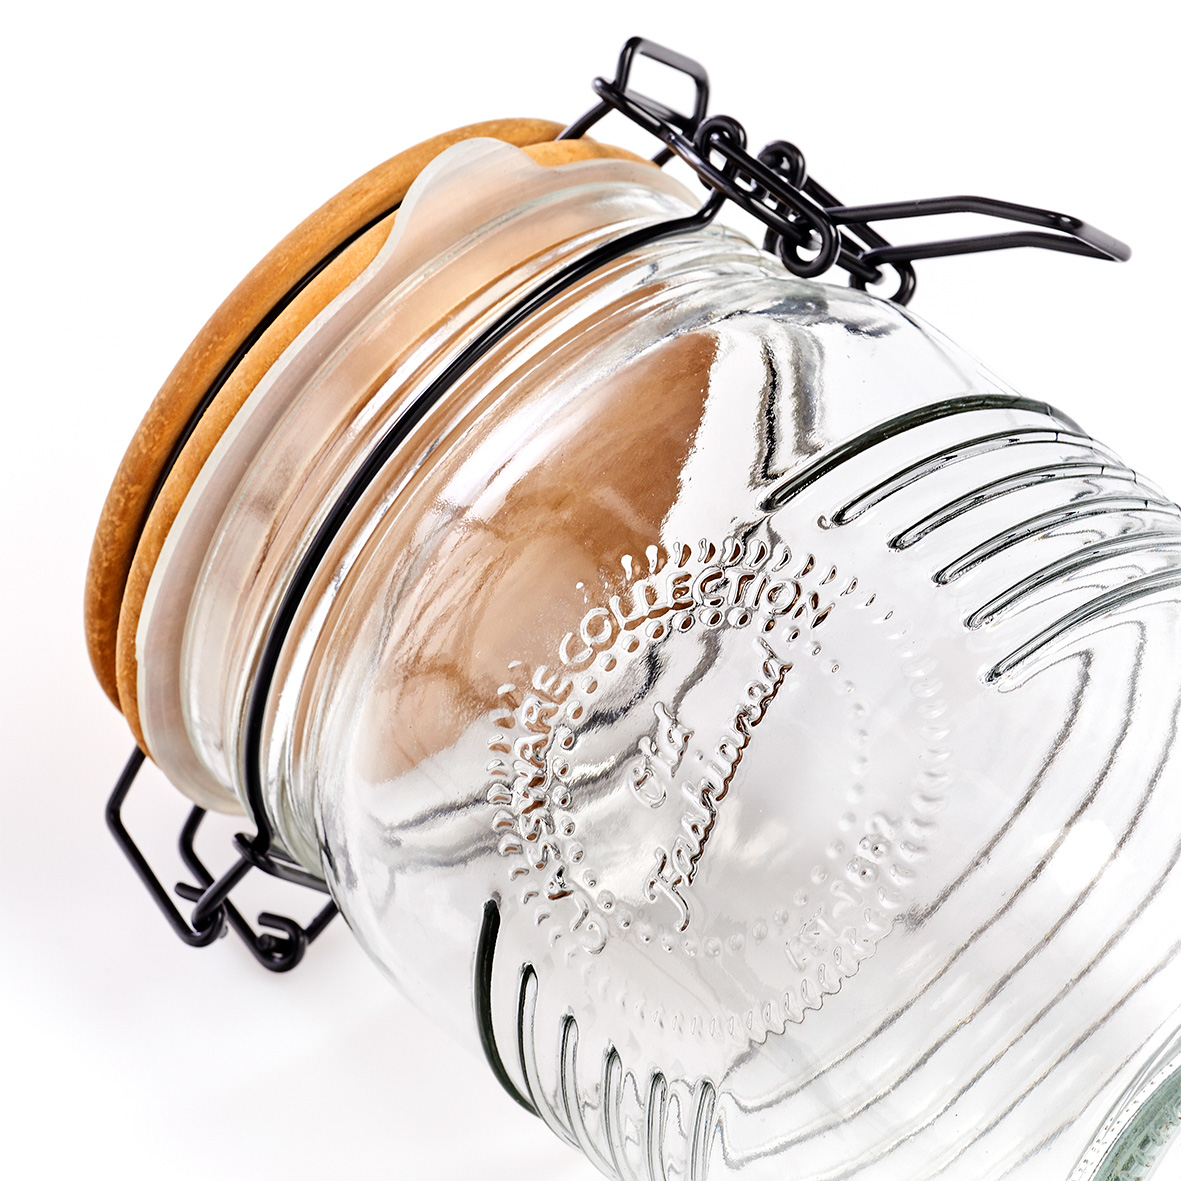 Vorratsglas, Glas; Metall; Holz, Ø10,8x17,5 cm. Farbe: transparent. Fassungsvermögen: 1000 ml. Mit diesem Vorratsglas der Old fashioned-Serie